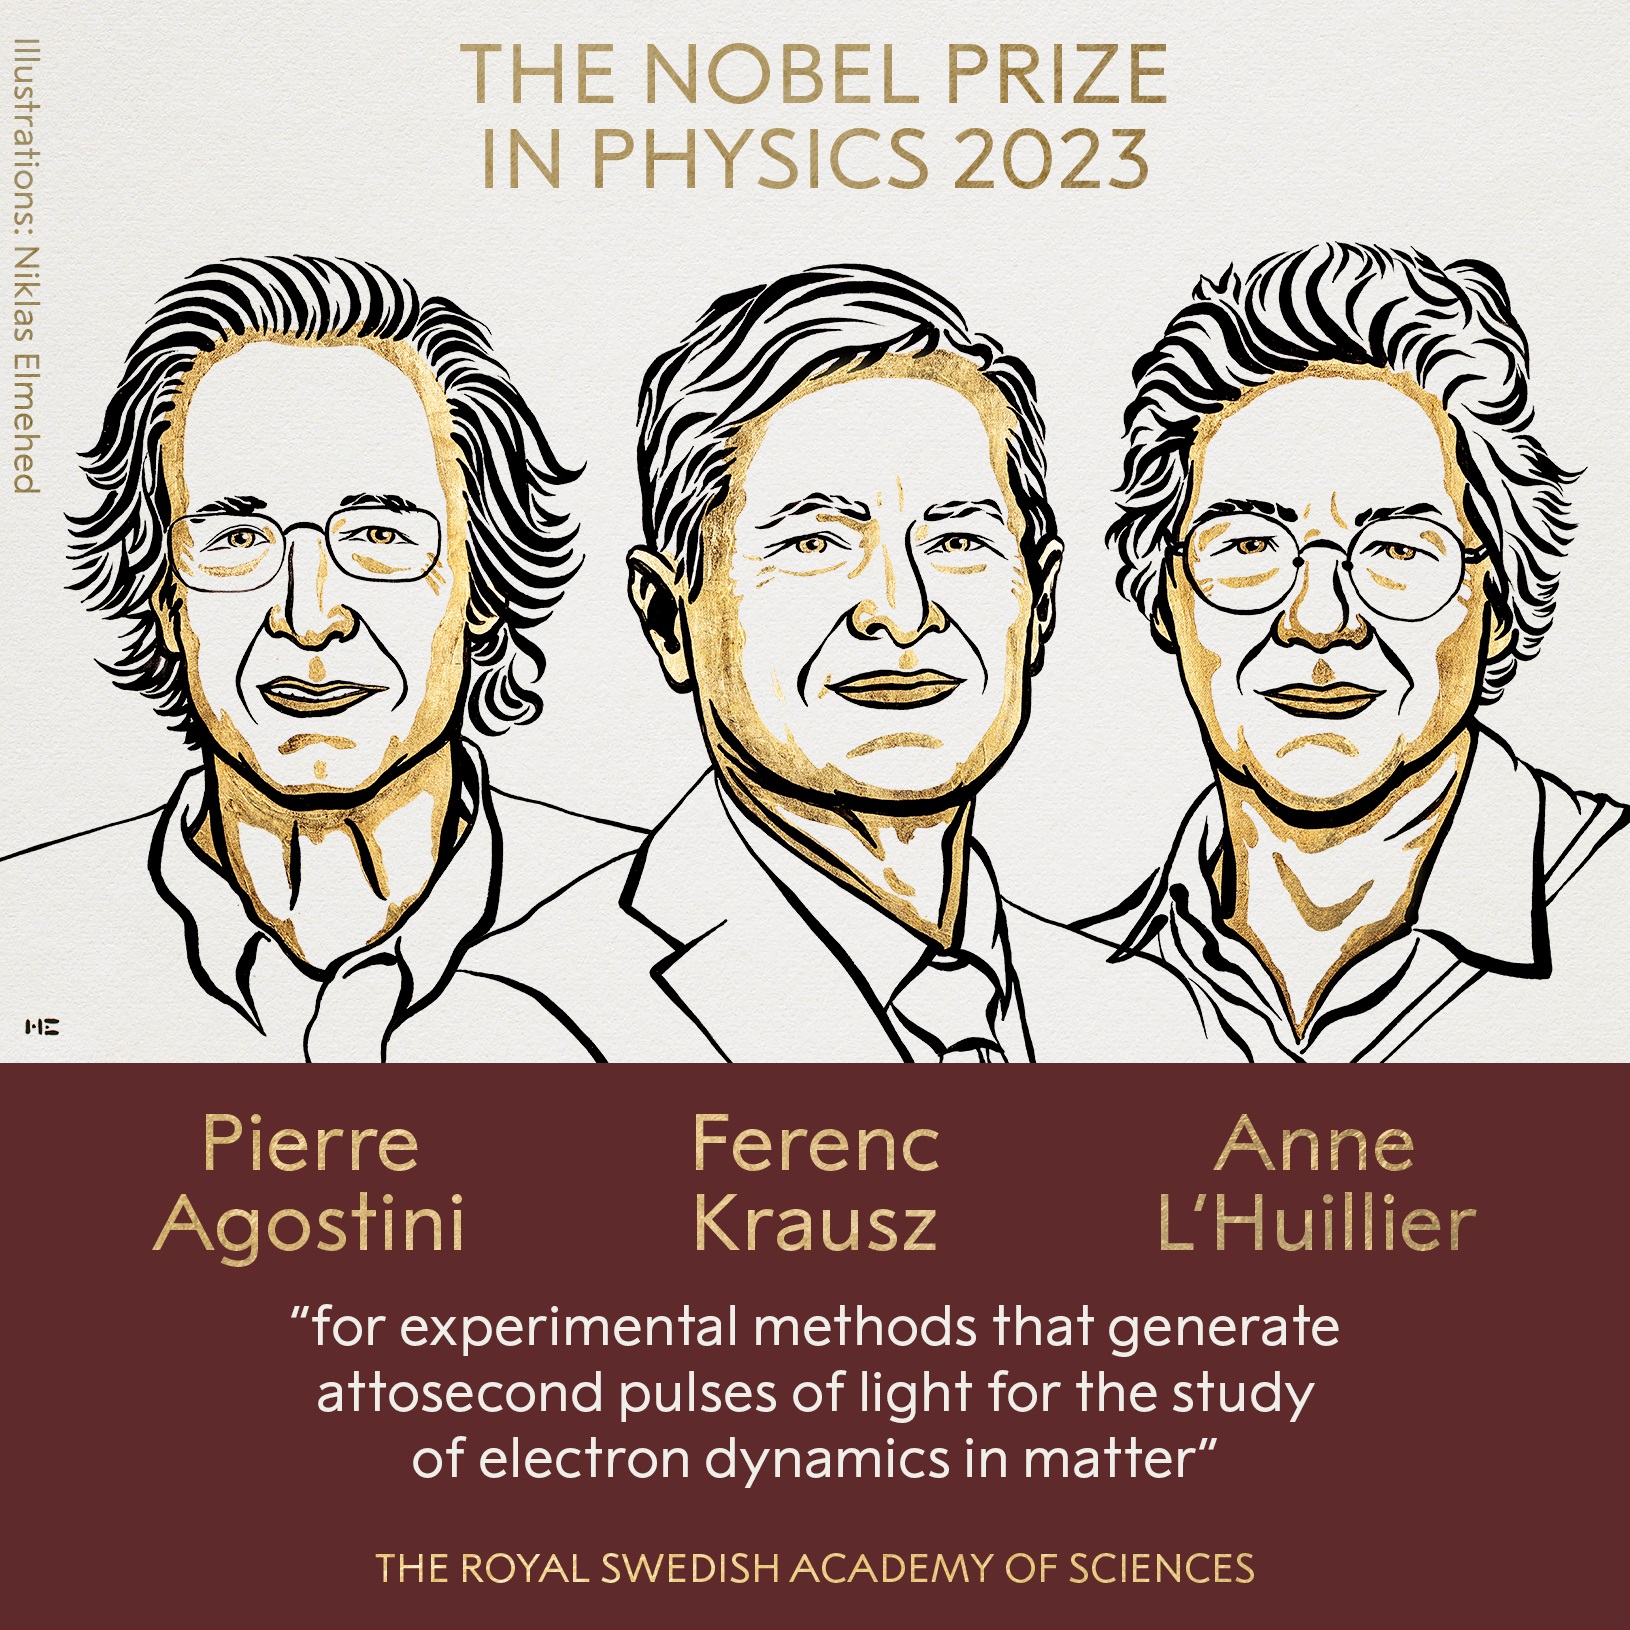 فوز ثلاثة علماء بجائزة نوبل فى الفيزياء لعام 2023